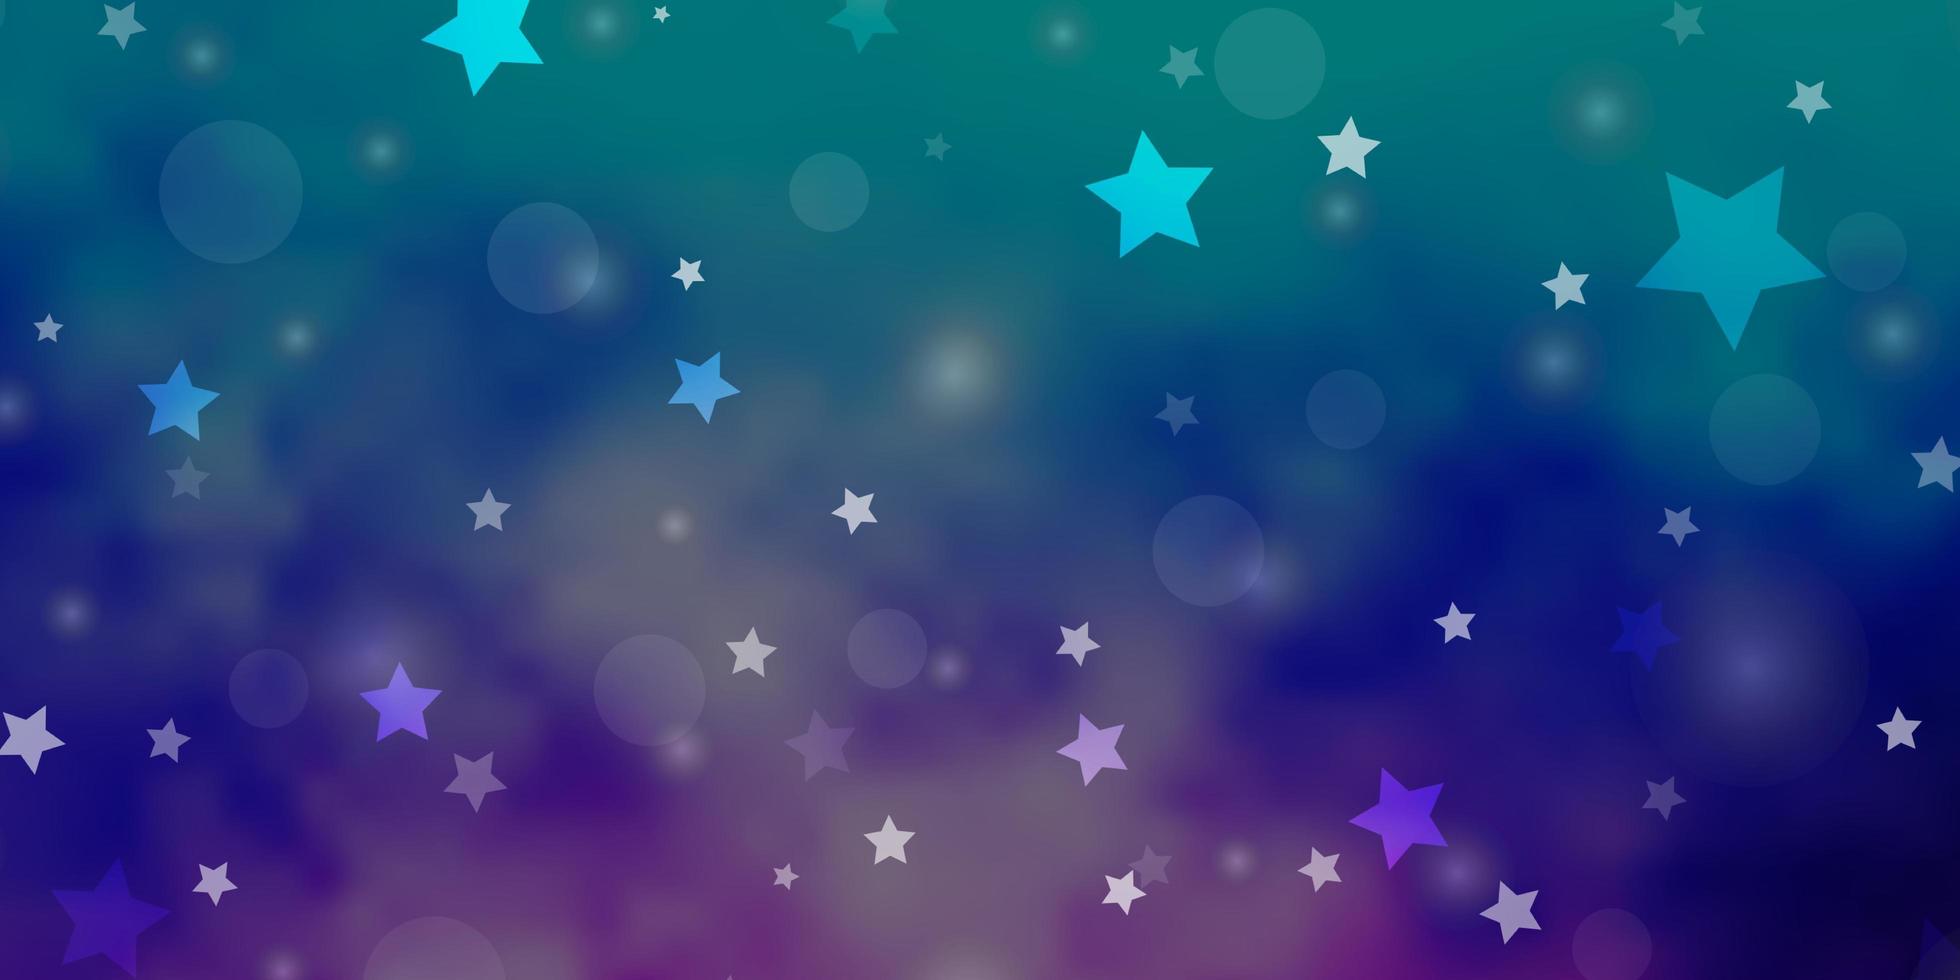 Fondo de vector rosa claro, azul con círculos, estrellas.